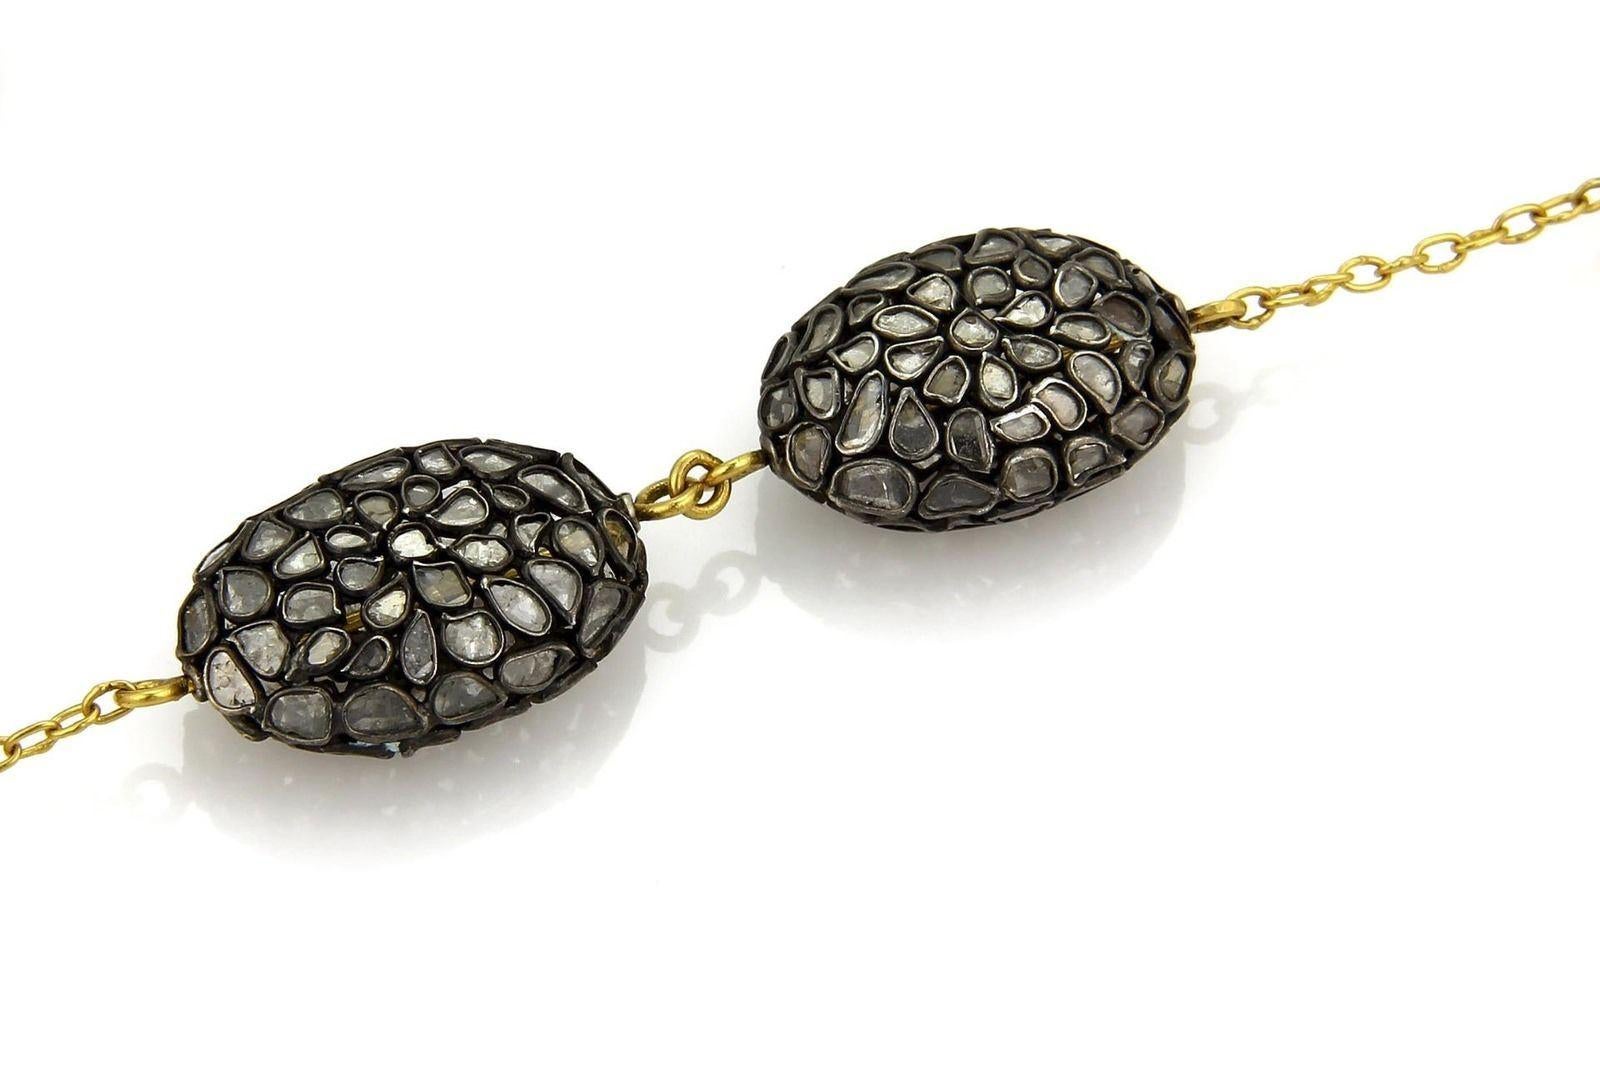 Voici un impressionnant collier authentique de Gurhan de la collection PASTICHE. Il est réalisé en or 24k et en argent sterling rhodié noir. Il se compose de 3 perles ovales martelées à la main en or jaune et de 6 pastilles en argent foncé avec des